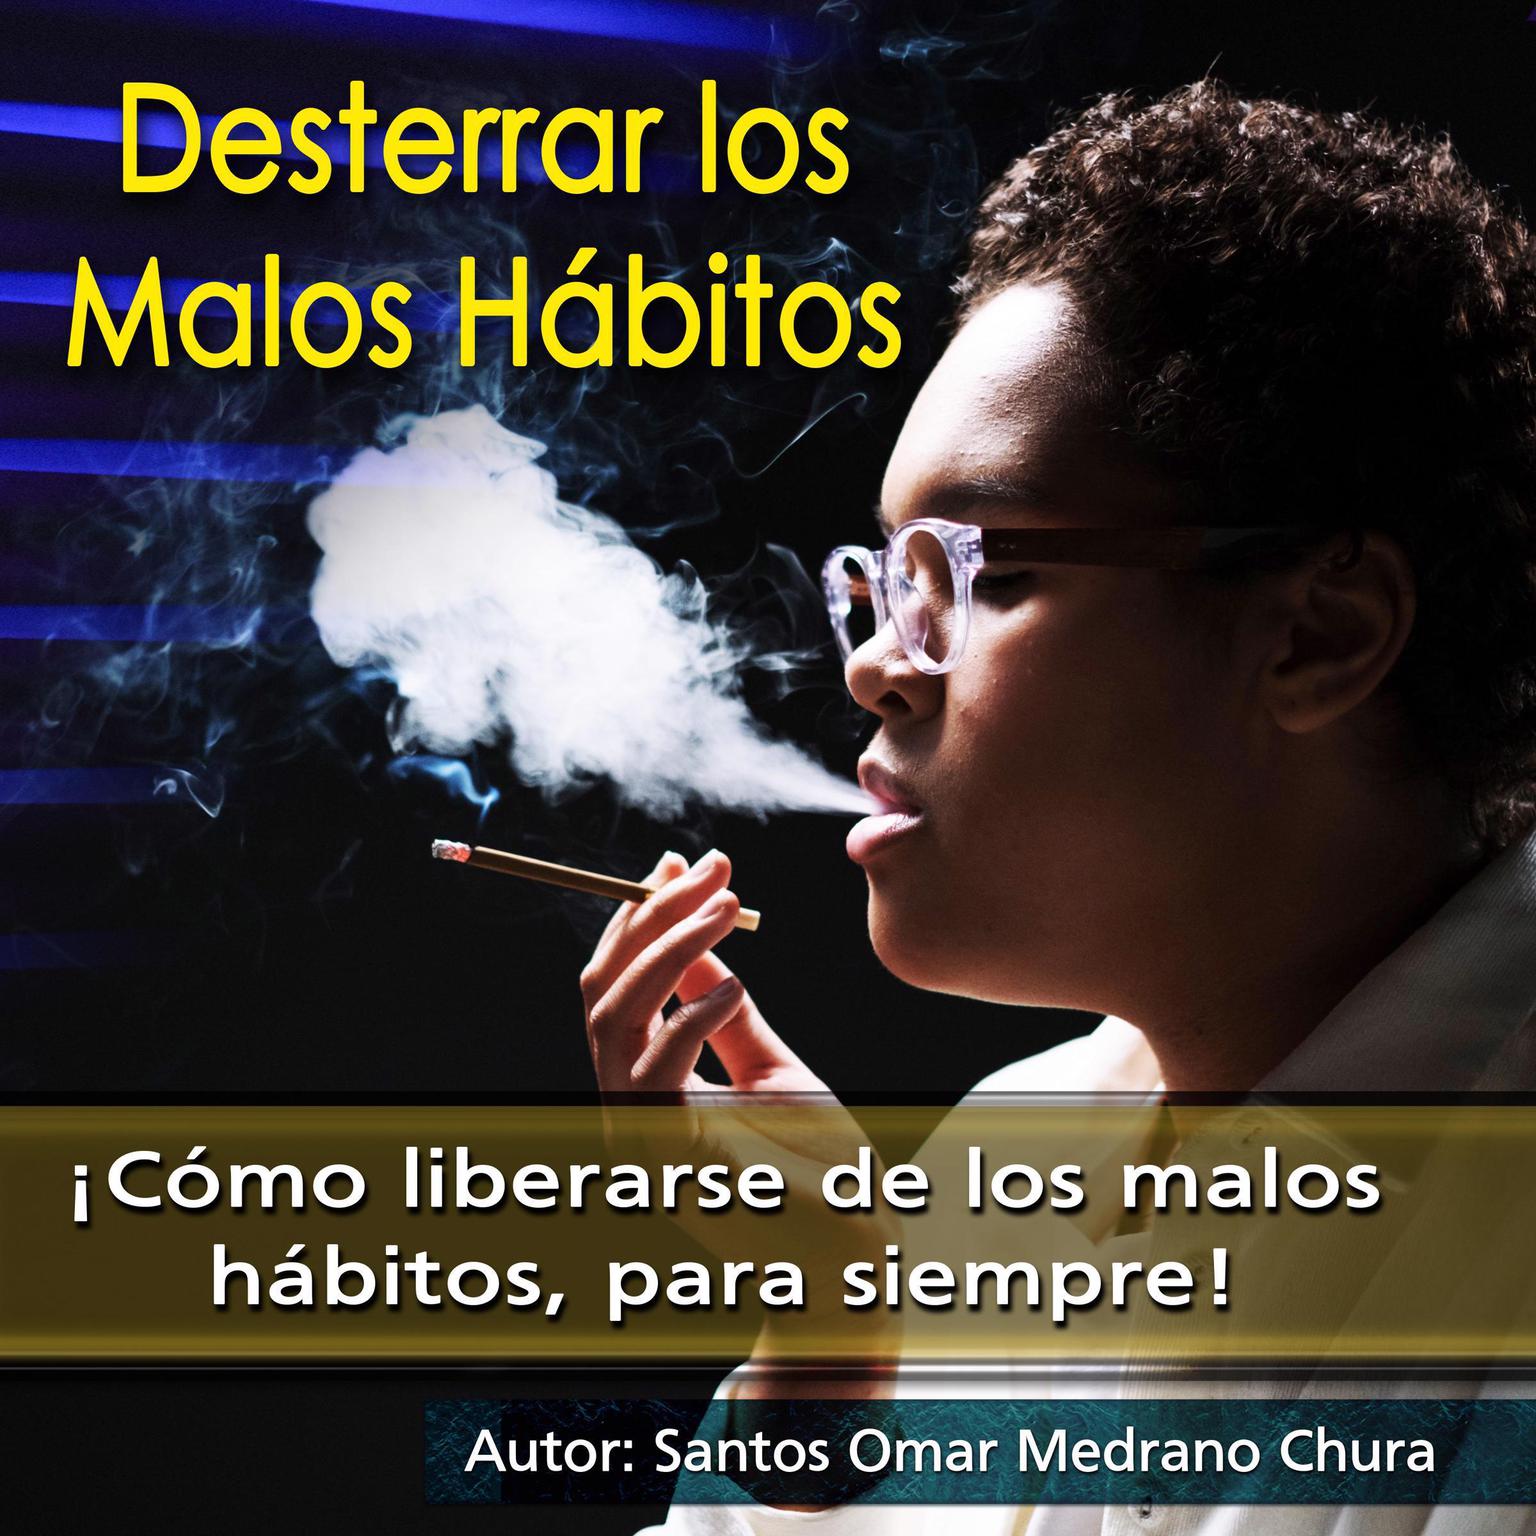 Desterrar los malos hábitos: ¡Cómo liberarse de los malos hábitos, para siempre! Audiobook, by Santos Omar Medrano Chura